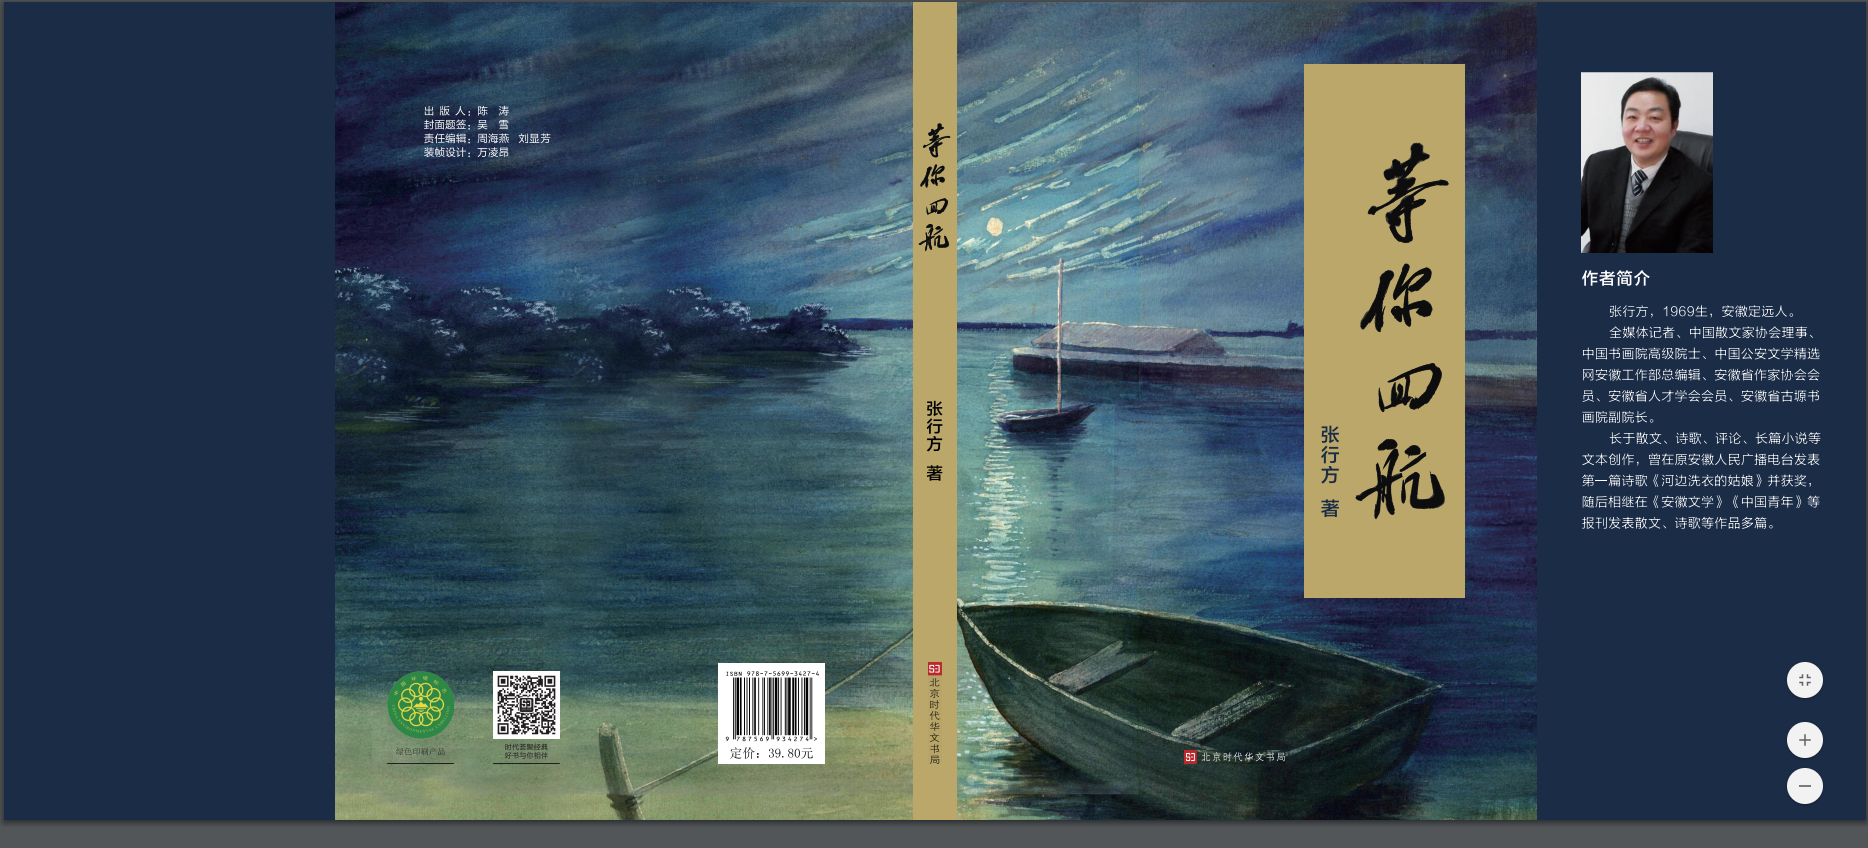 张行方散文（诗）集《等你回航》由北京时代华文书局出版